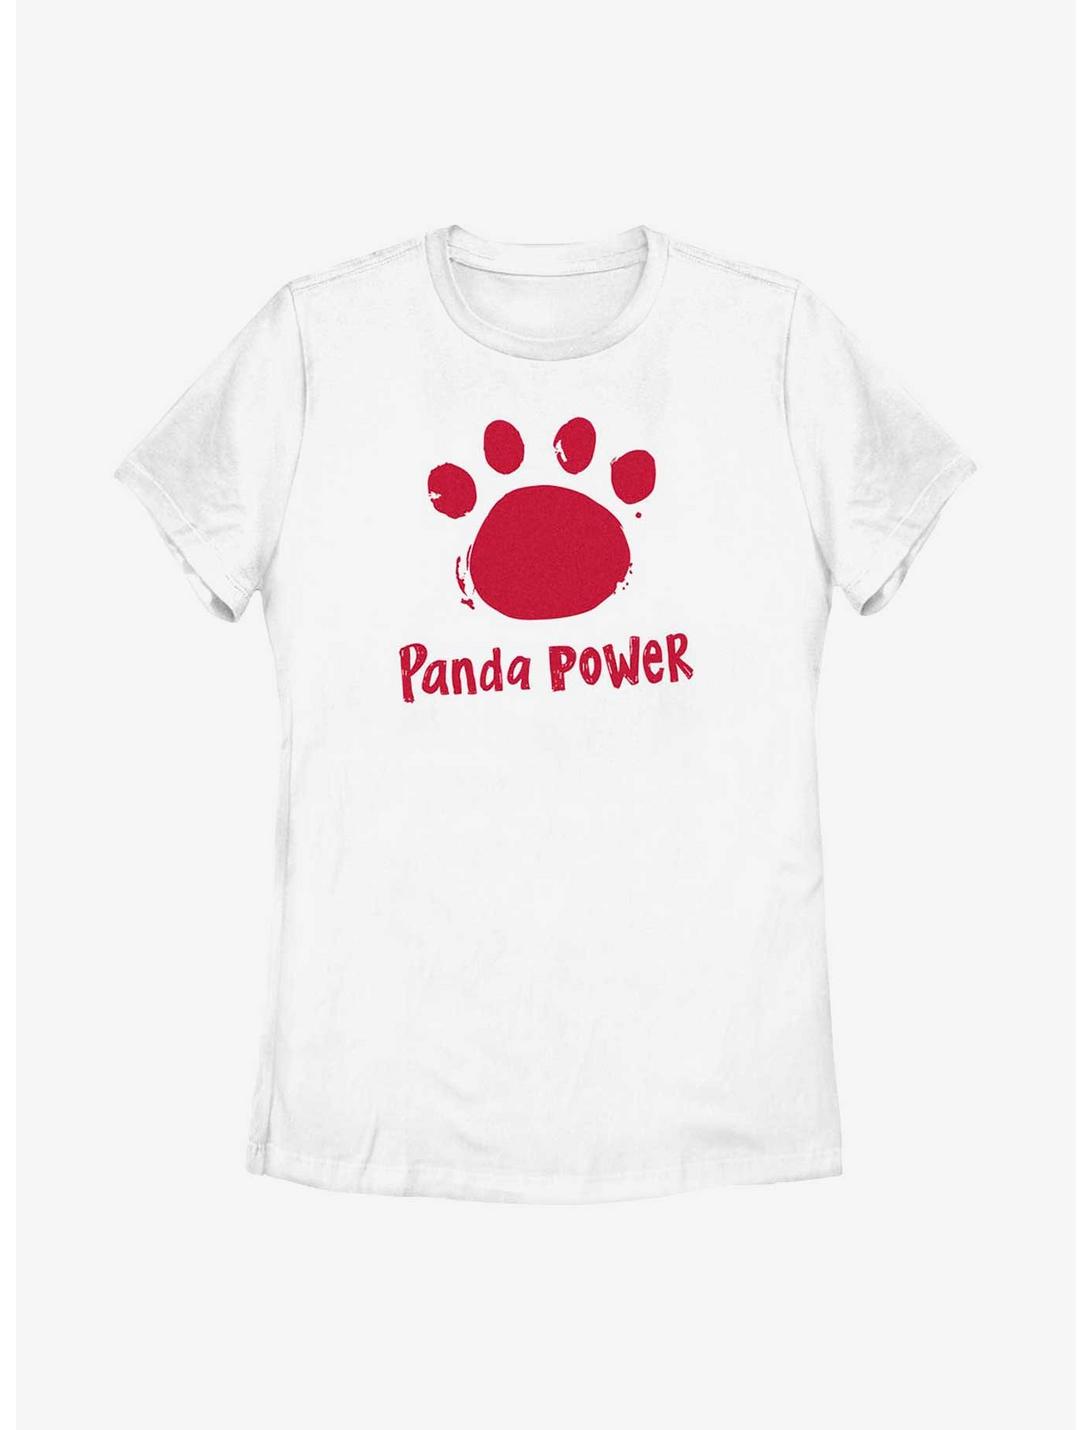 Disney Pixar Turning Red Panda Power Womens T-Shirt, WHITE, hi-res